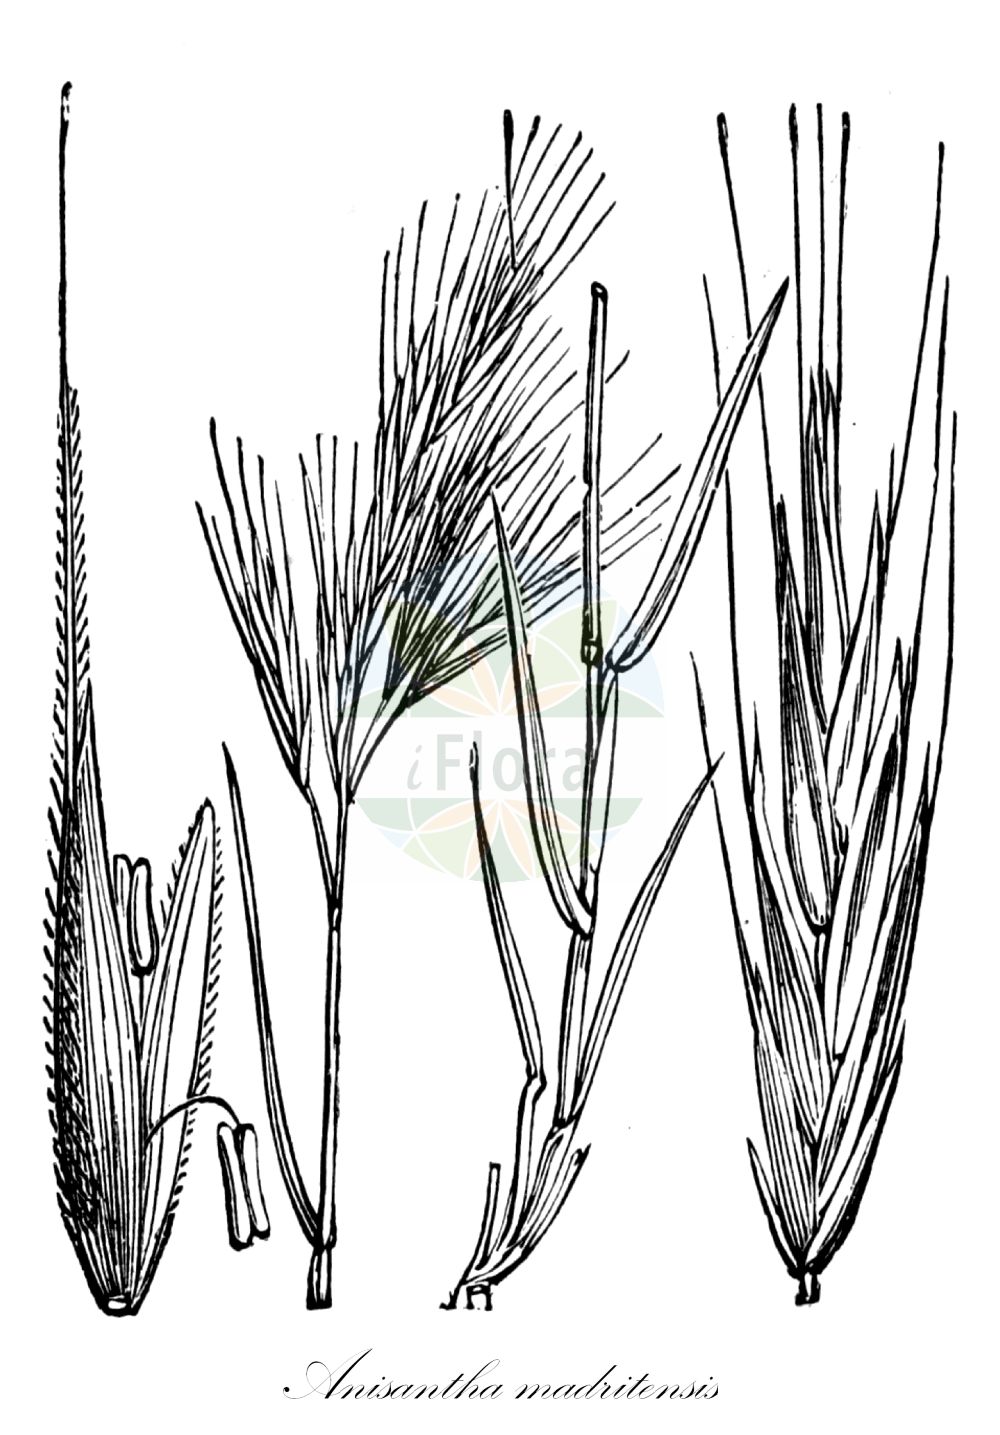 Historische Abbildung von Anisantha madritensis (Mittelmeer-Trespe - Compact Brome). Das Bild zeigt Blatt, Bluete, Frucht und Same. ---- Historical Drawing of Anisantha madritensis (Mittelmeer-Trespe - Compact Brome). The image is showing leaf, flower, fruit and seed.(Anisantha madritensis,Mittelmeer-Trespe,Compact Brome,Anisantha madritensis,Bromus darderi,Bromus fischeri,Bromus madritensis,Bromus villosus,Zerna madritensis,Mittelmeer-Trespe,Compact Brome,Compact Chess,Foxtail Brome,Madrid Brome,Spanish Brome,Anisantha,Poaceae,Süßgräser,Grass family,Blatt,Bluete,Frucht,Same,leaf,flower,fruit,seed,Fitch et al. (1880))